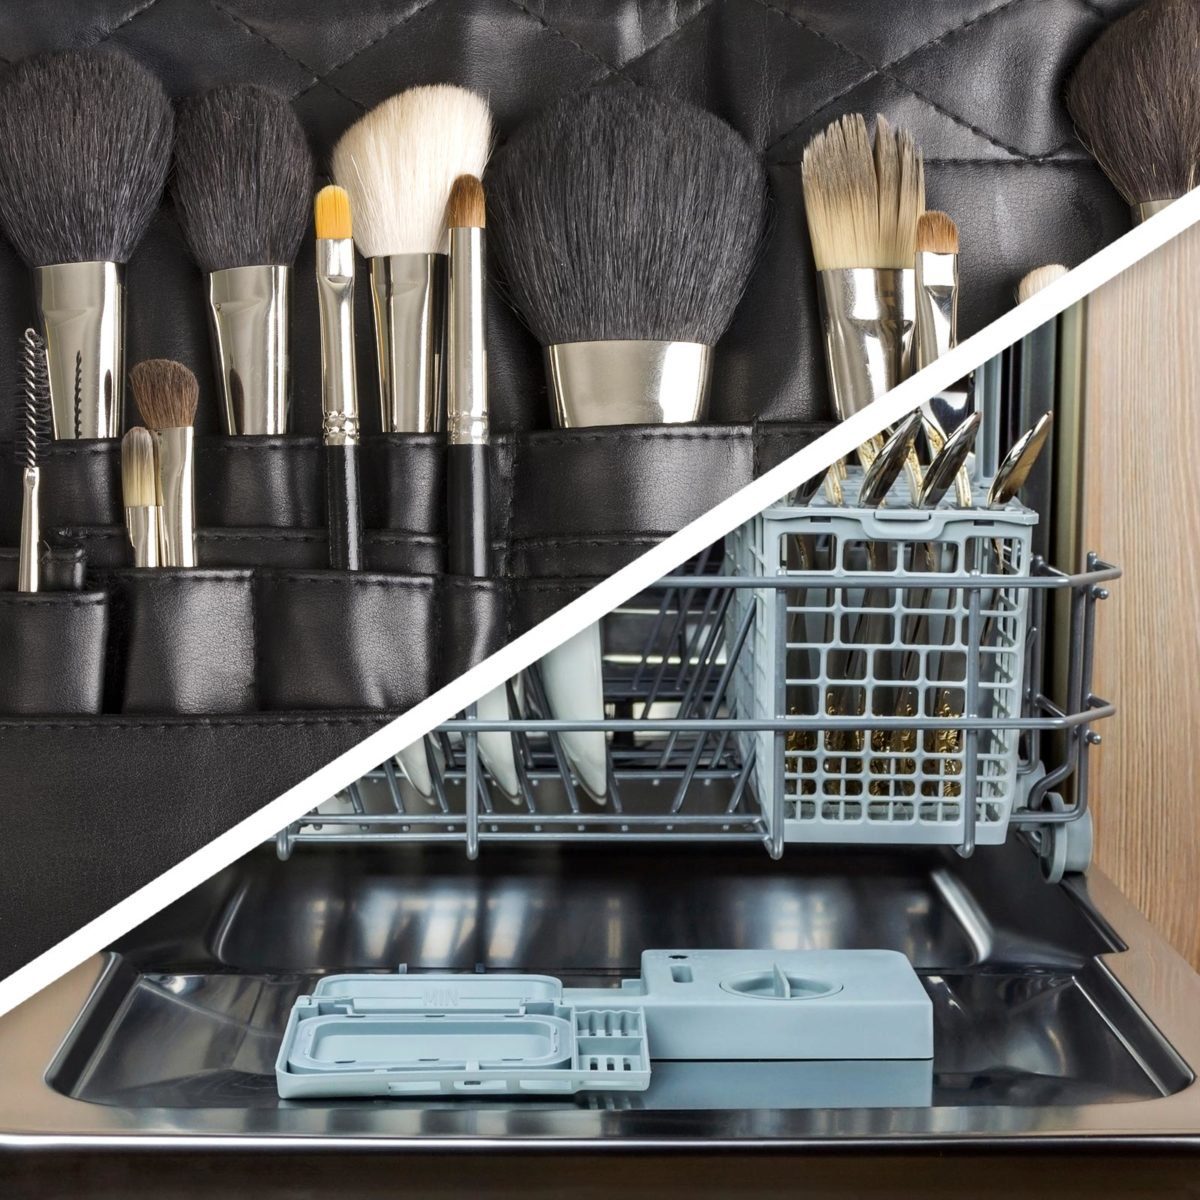 Make-up brushes and dishwasher